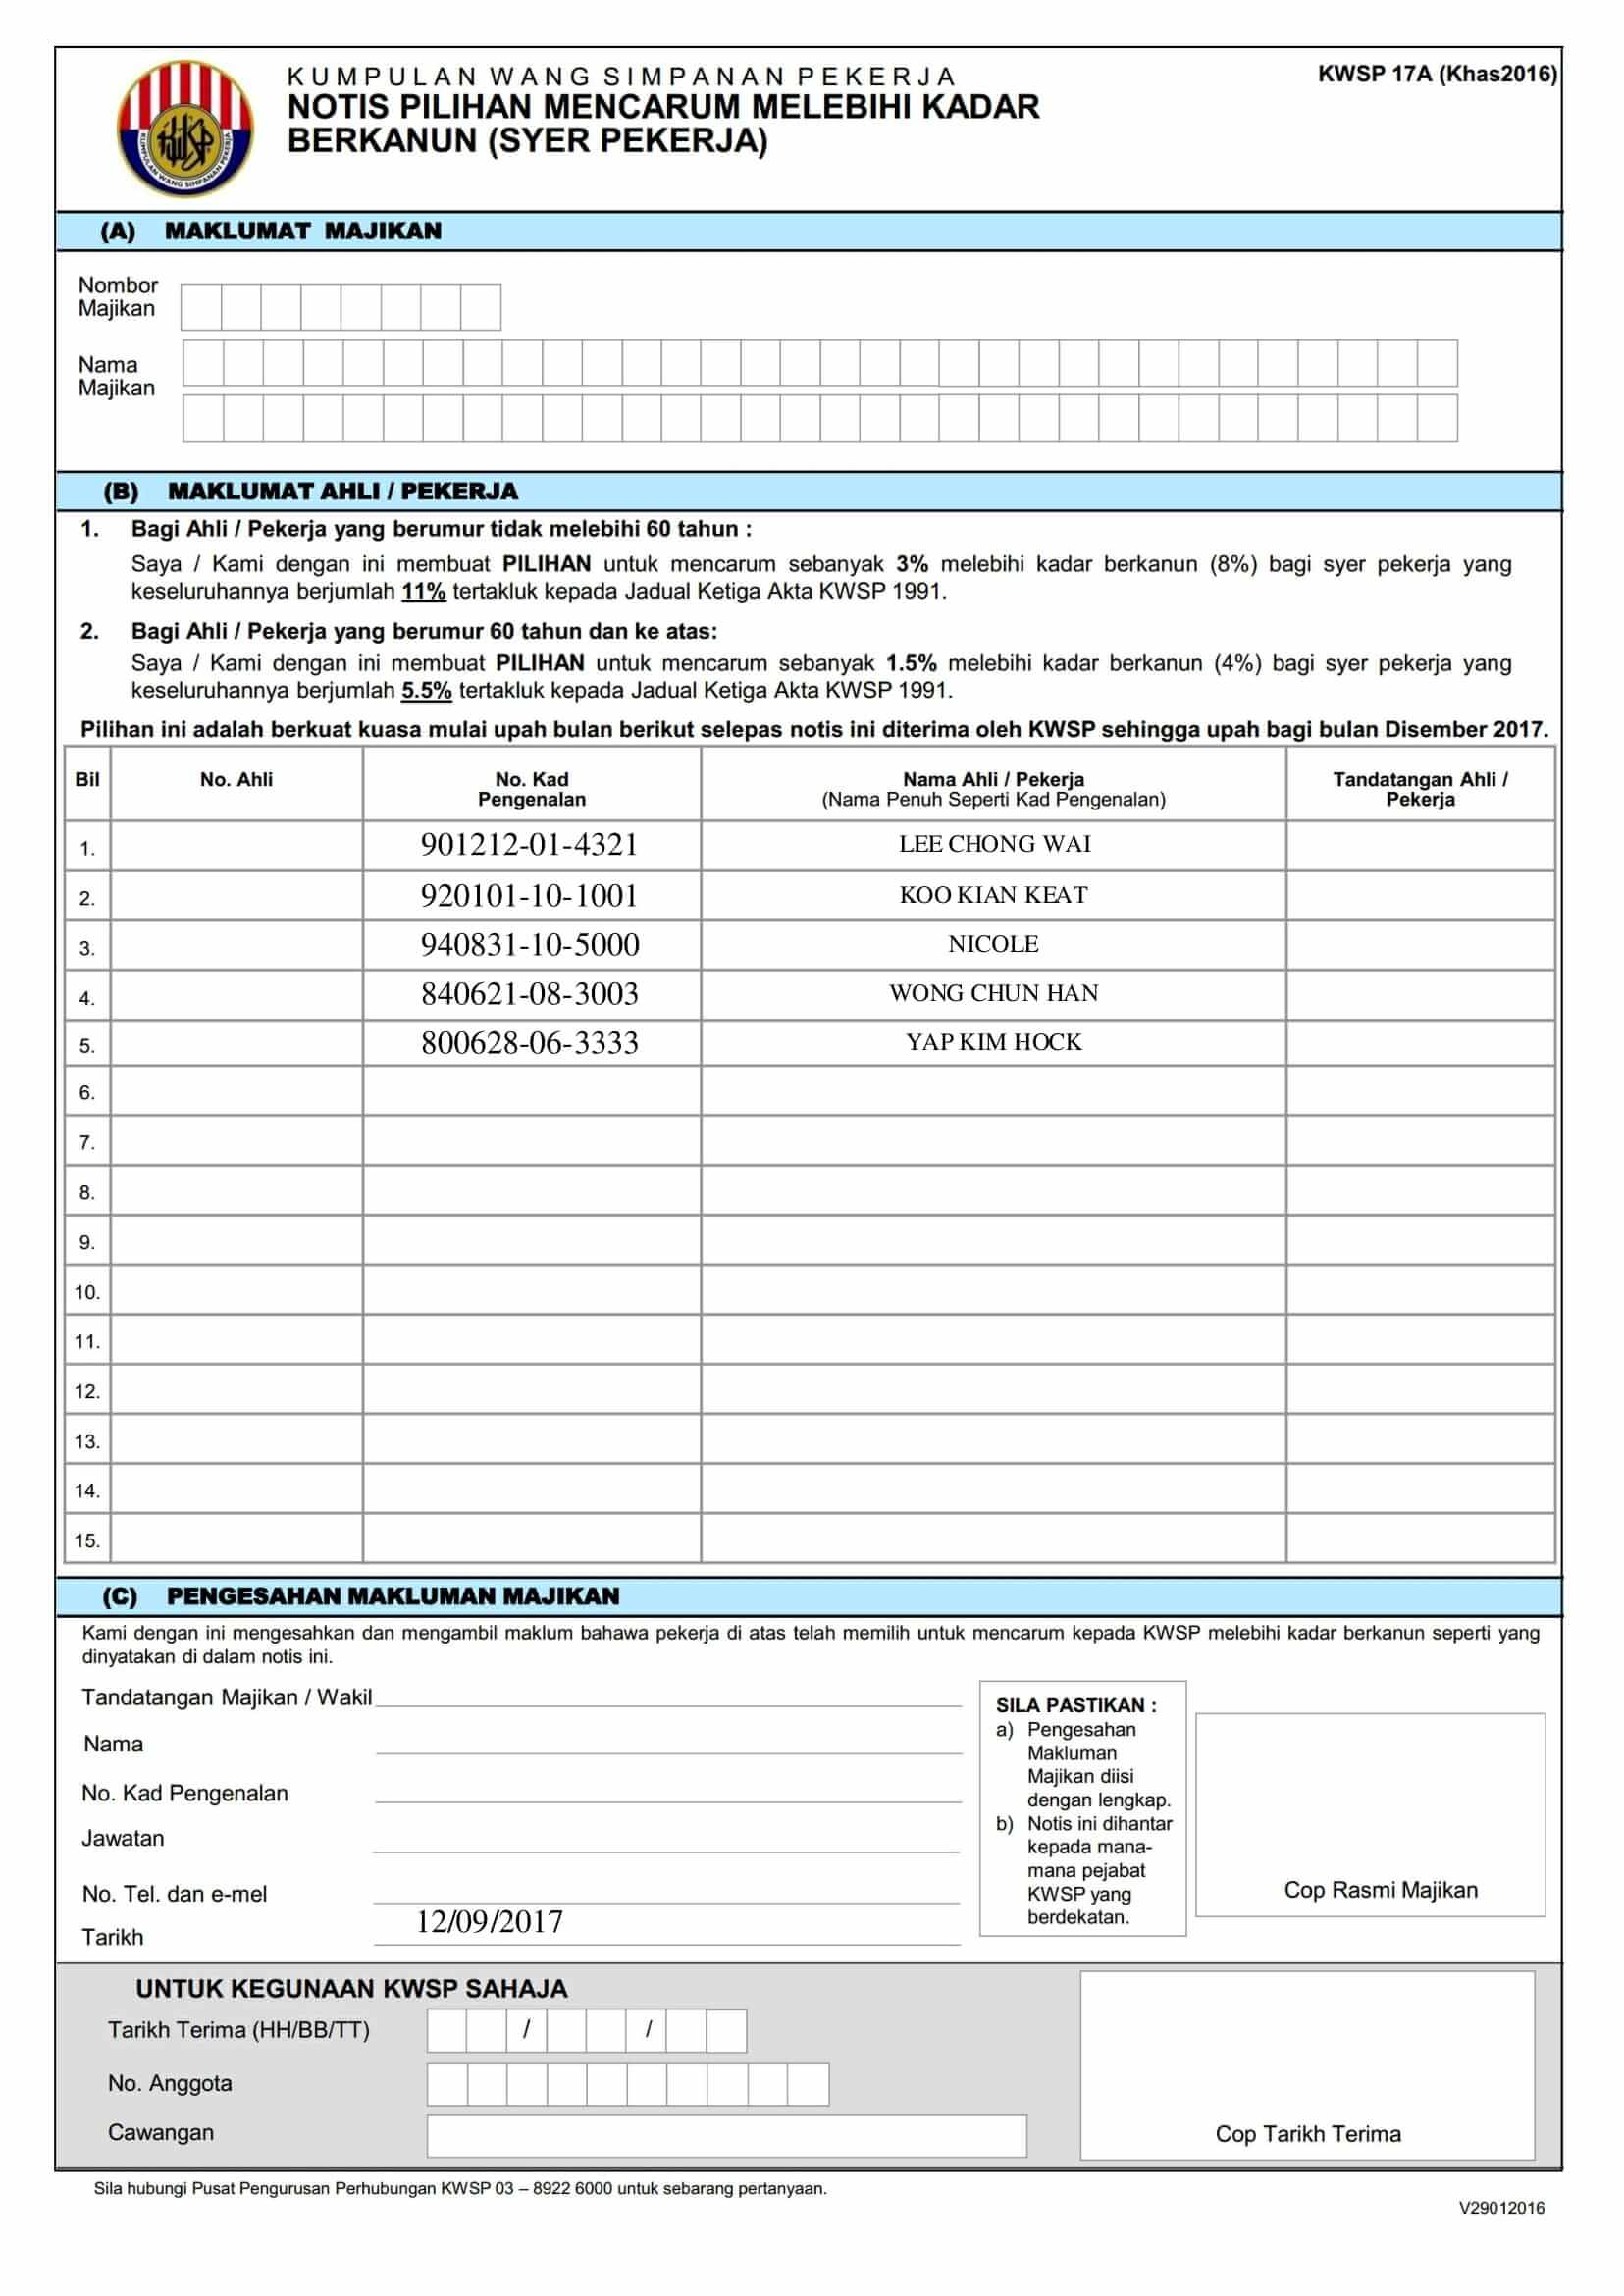 KWSP 17A (Khas2016) Form